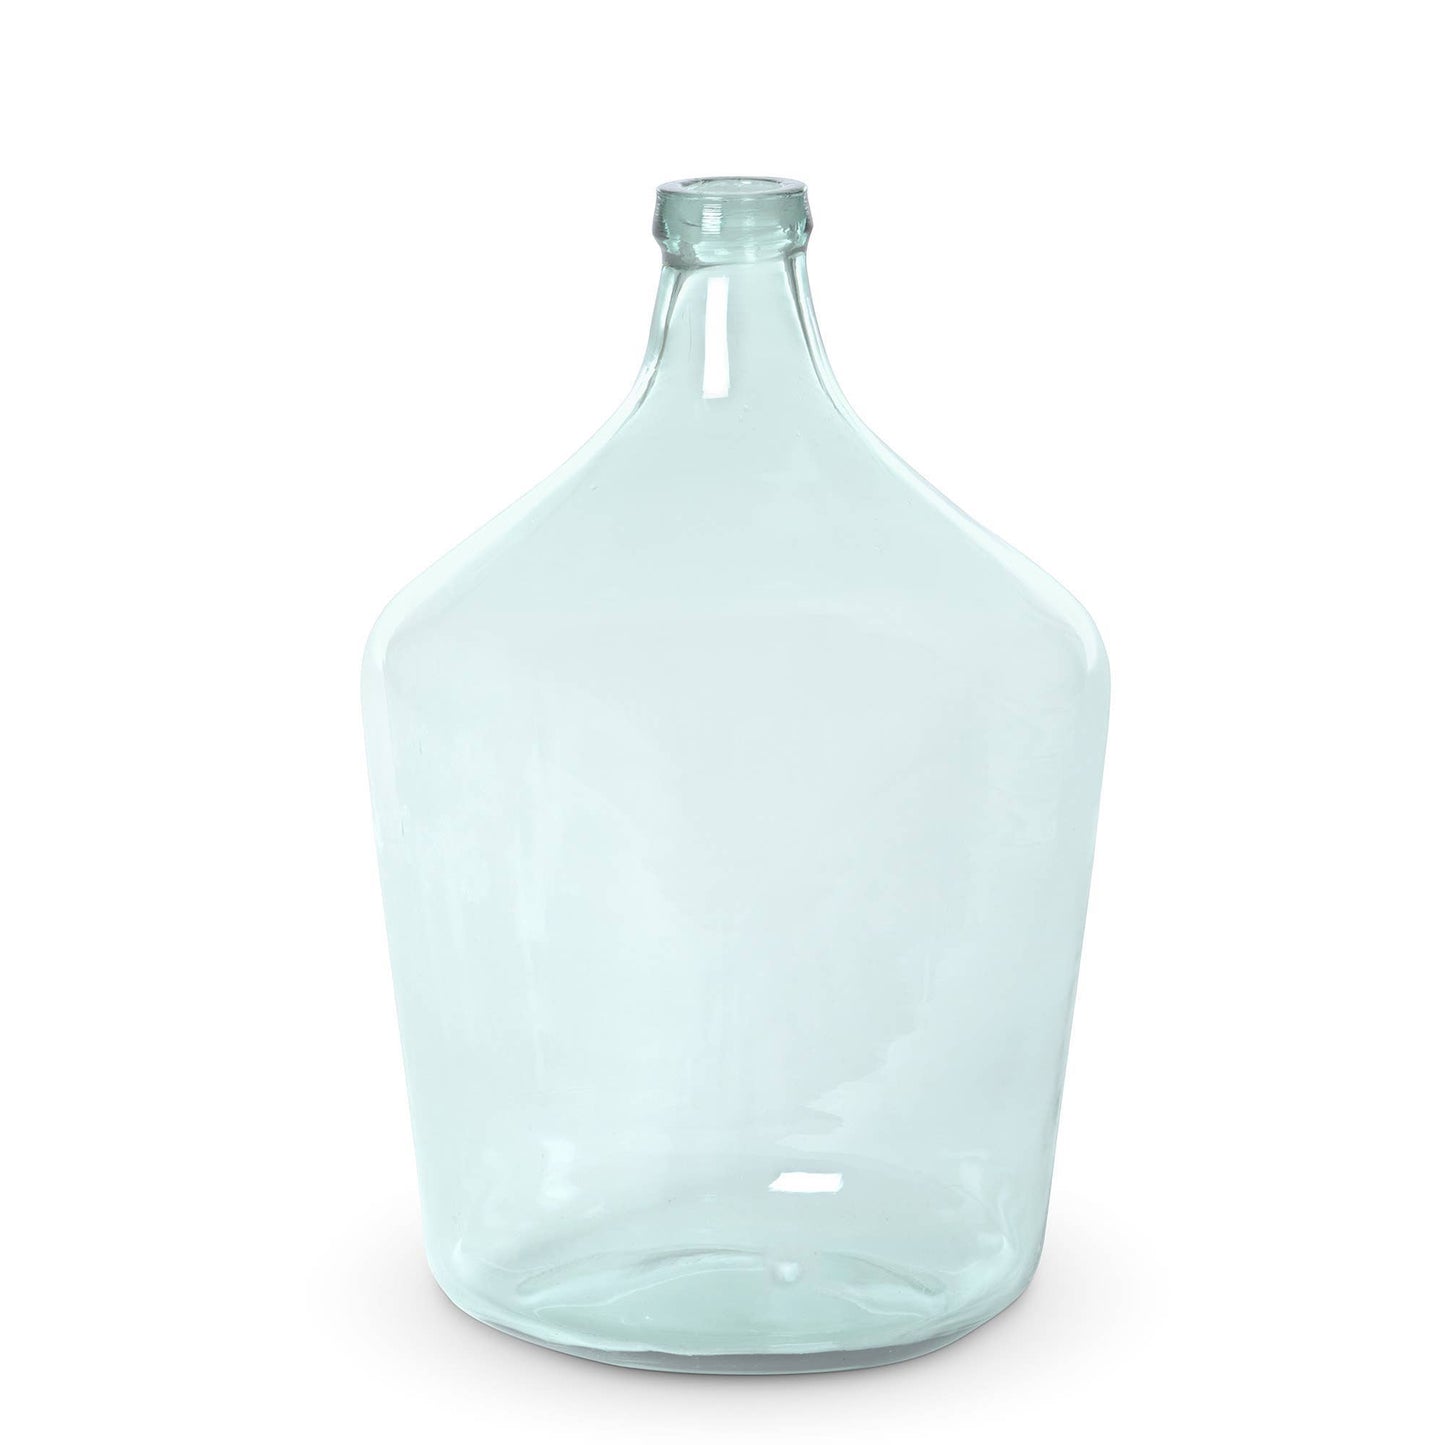 Glass Vineyard Vase